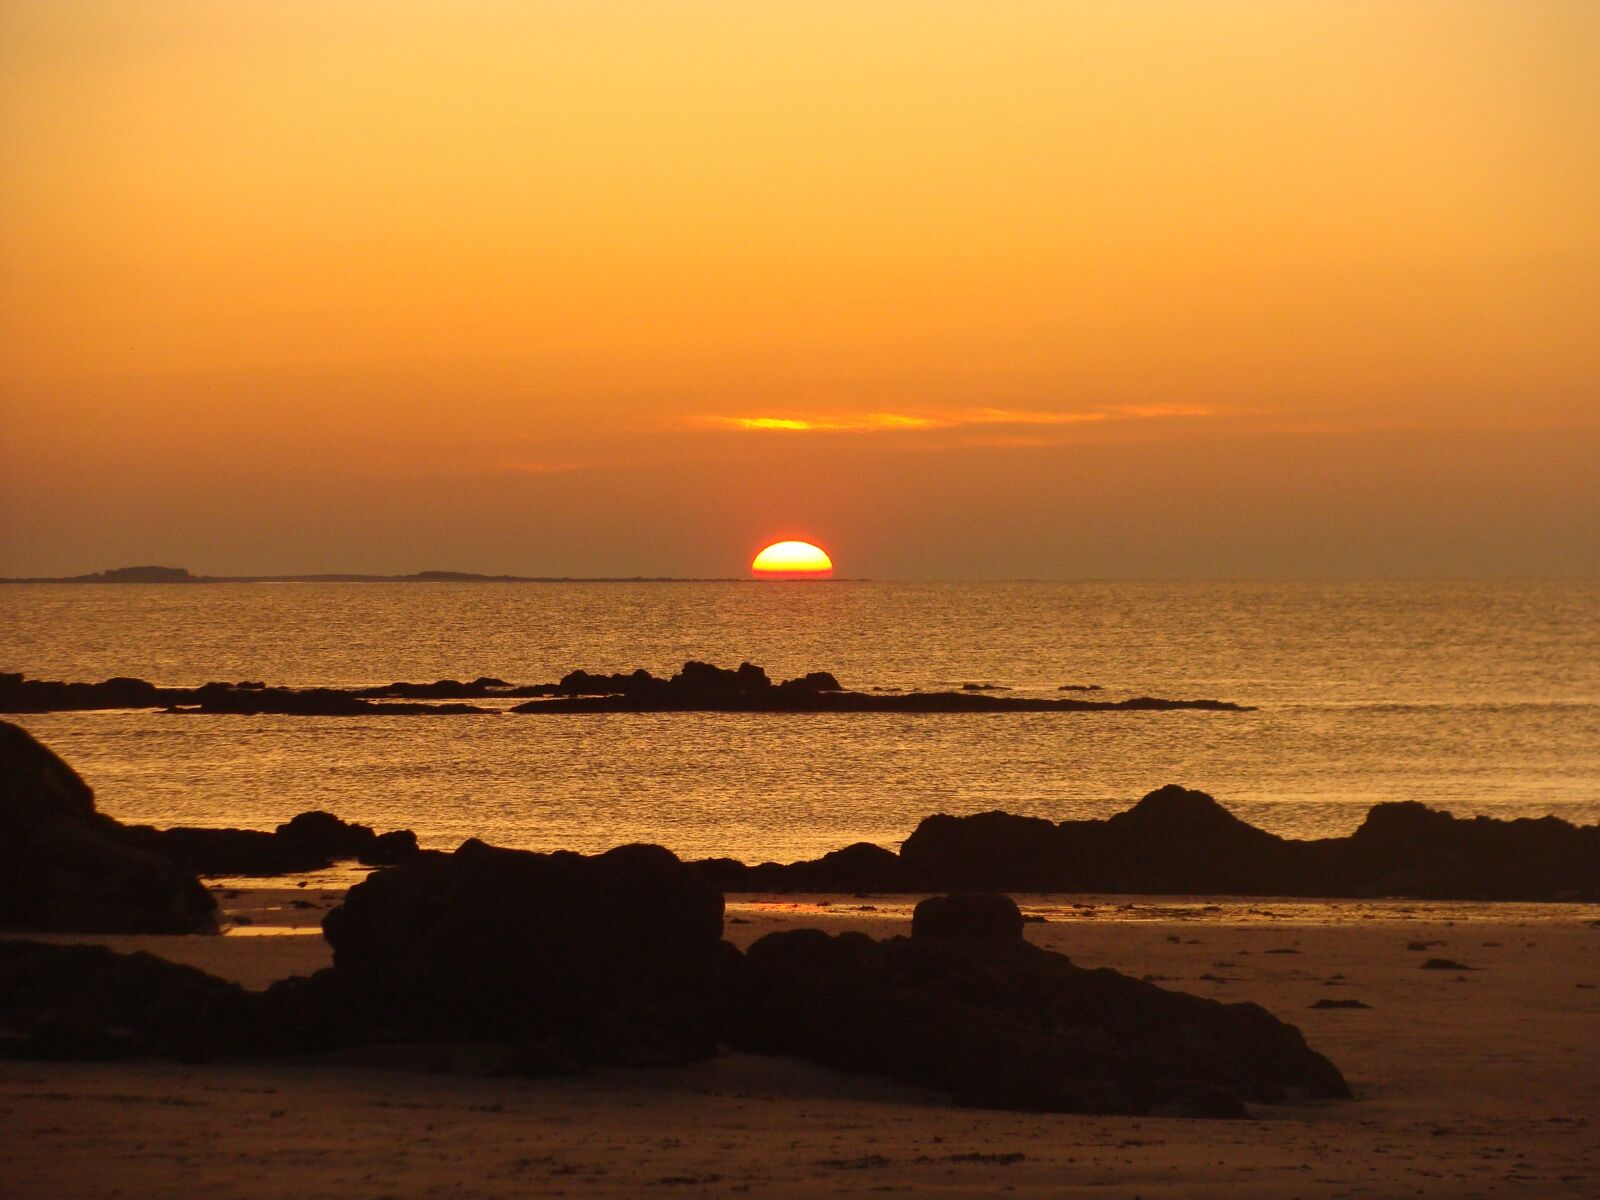 Sony Cyber-shot DSC-H10 sample photo. Sun, sea, sunset photography